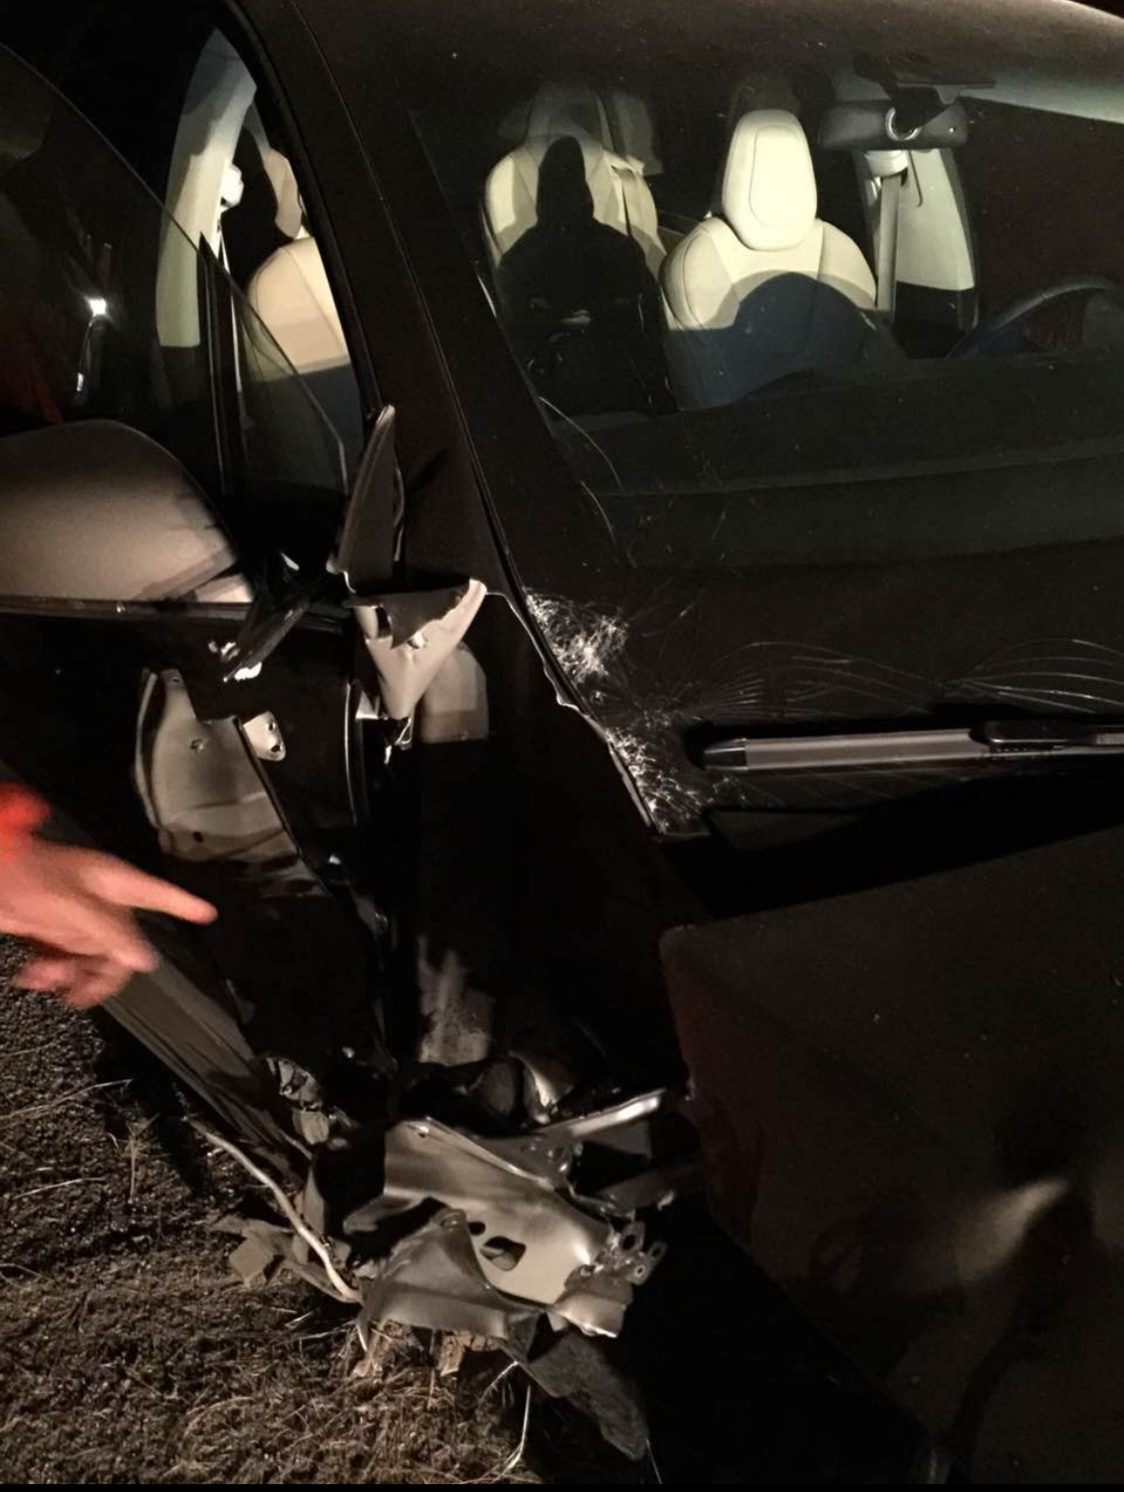 
Chiếc Tesla Model X bị hỏng nặng phần sườn xe bên phải.
